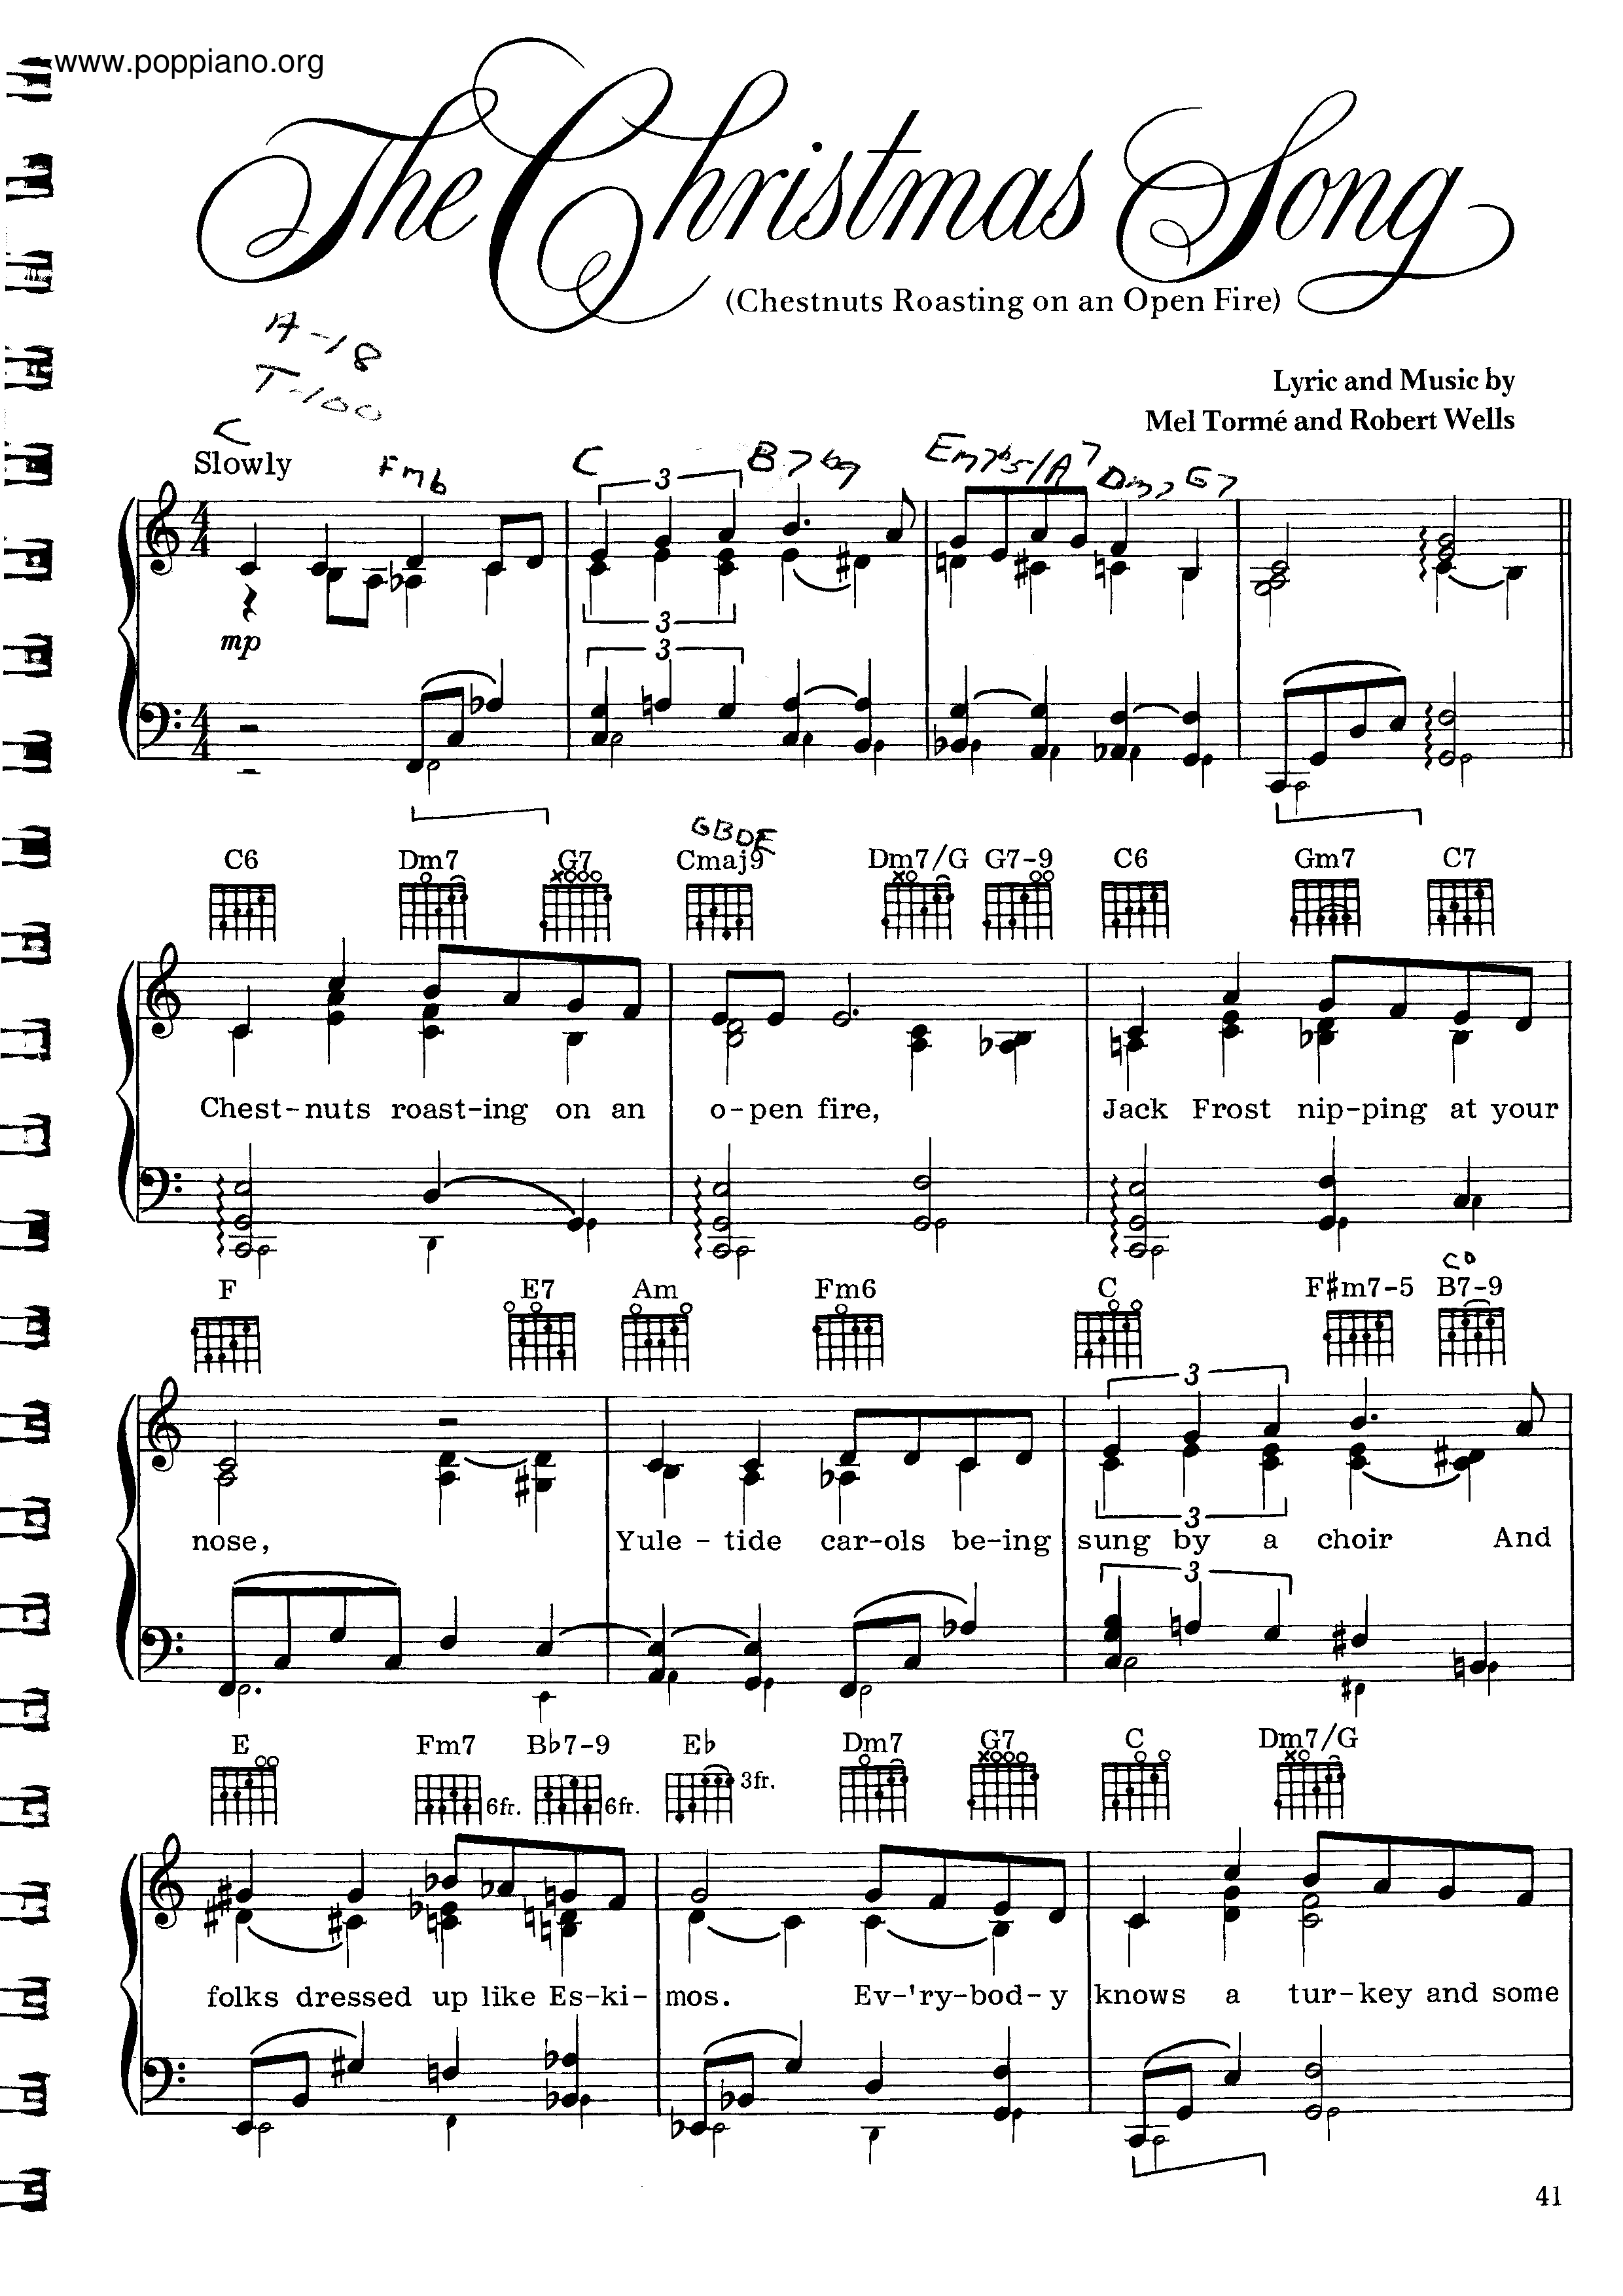 The Christmas Songピアノ譜